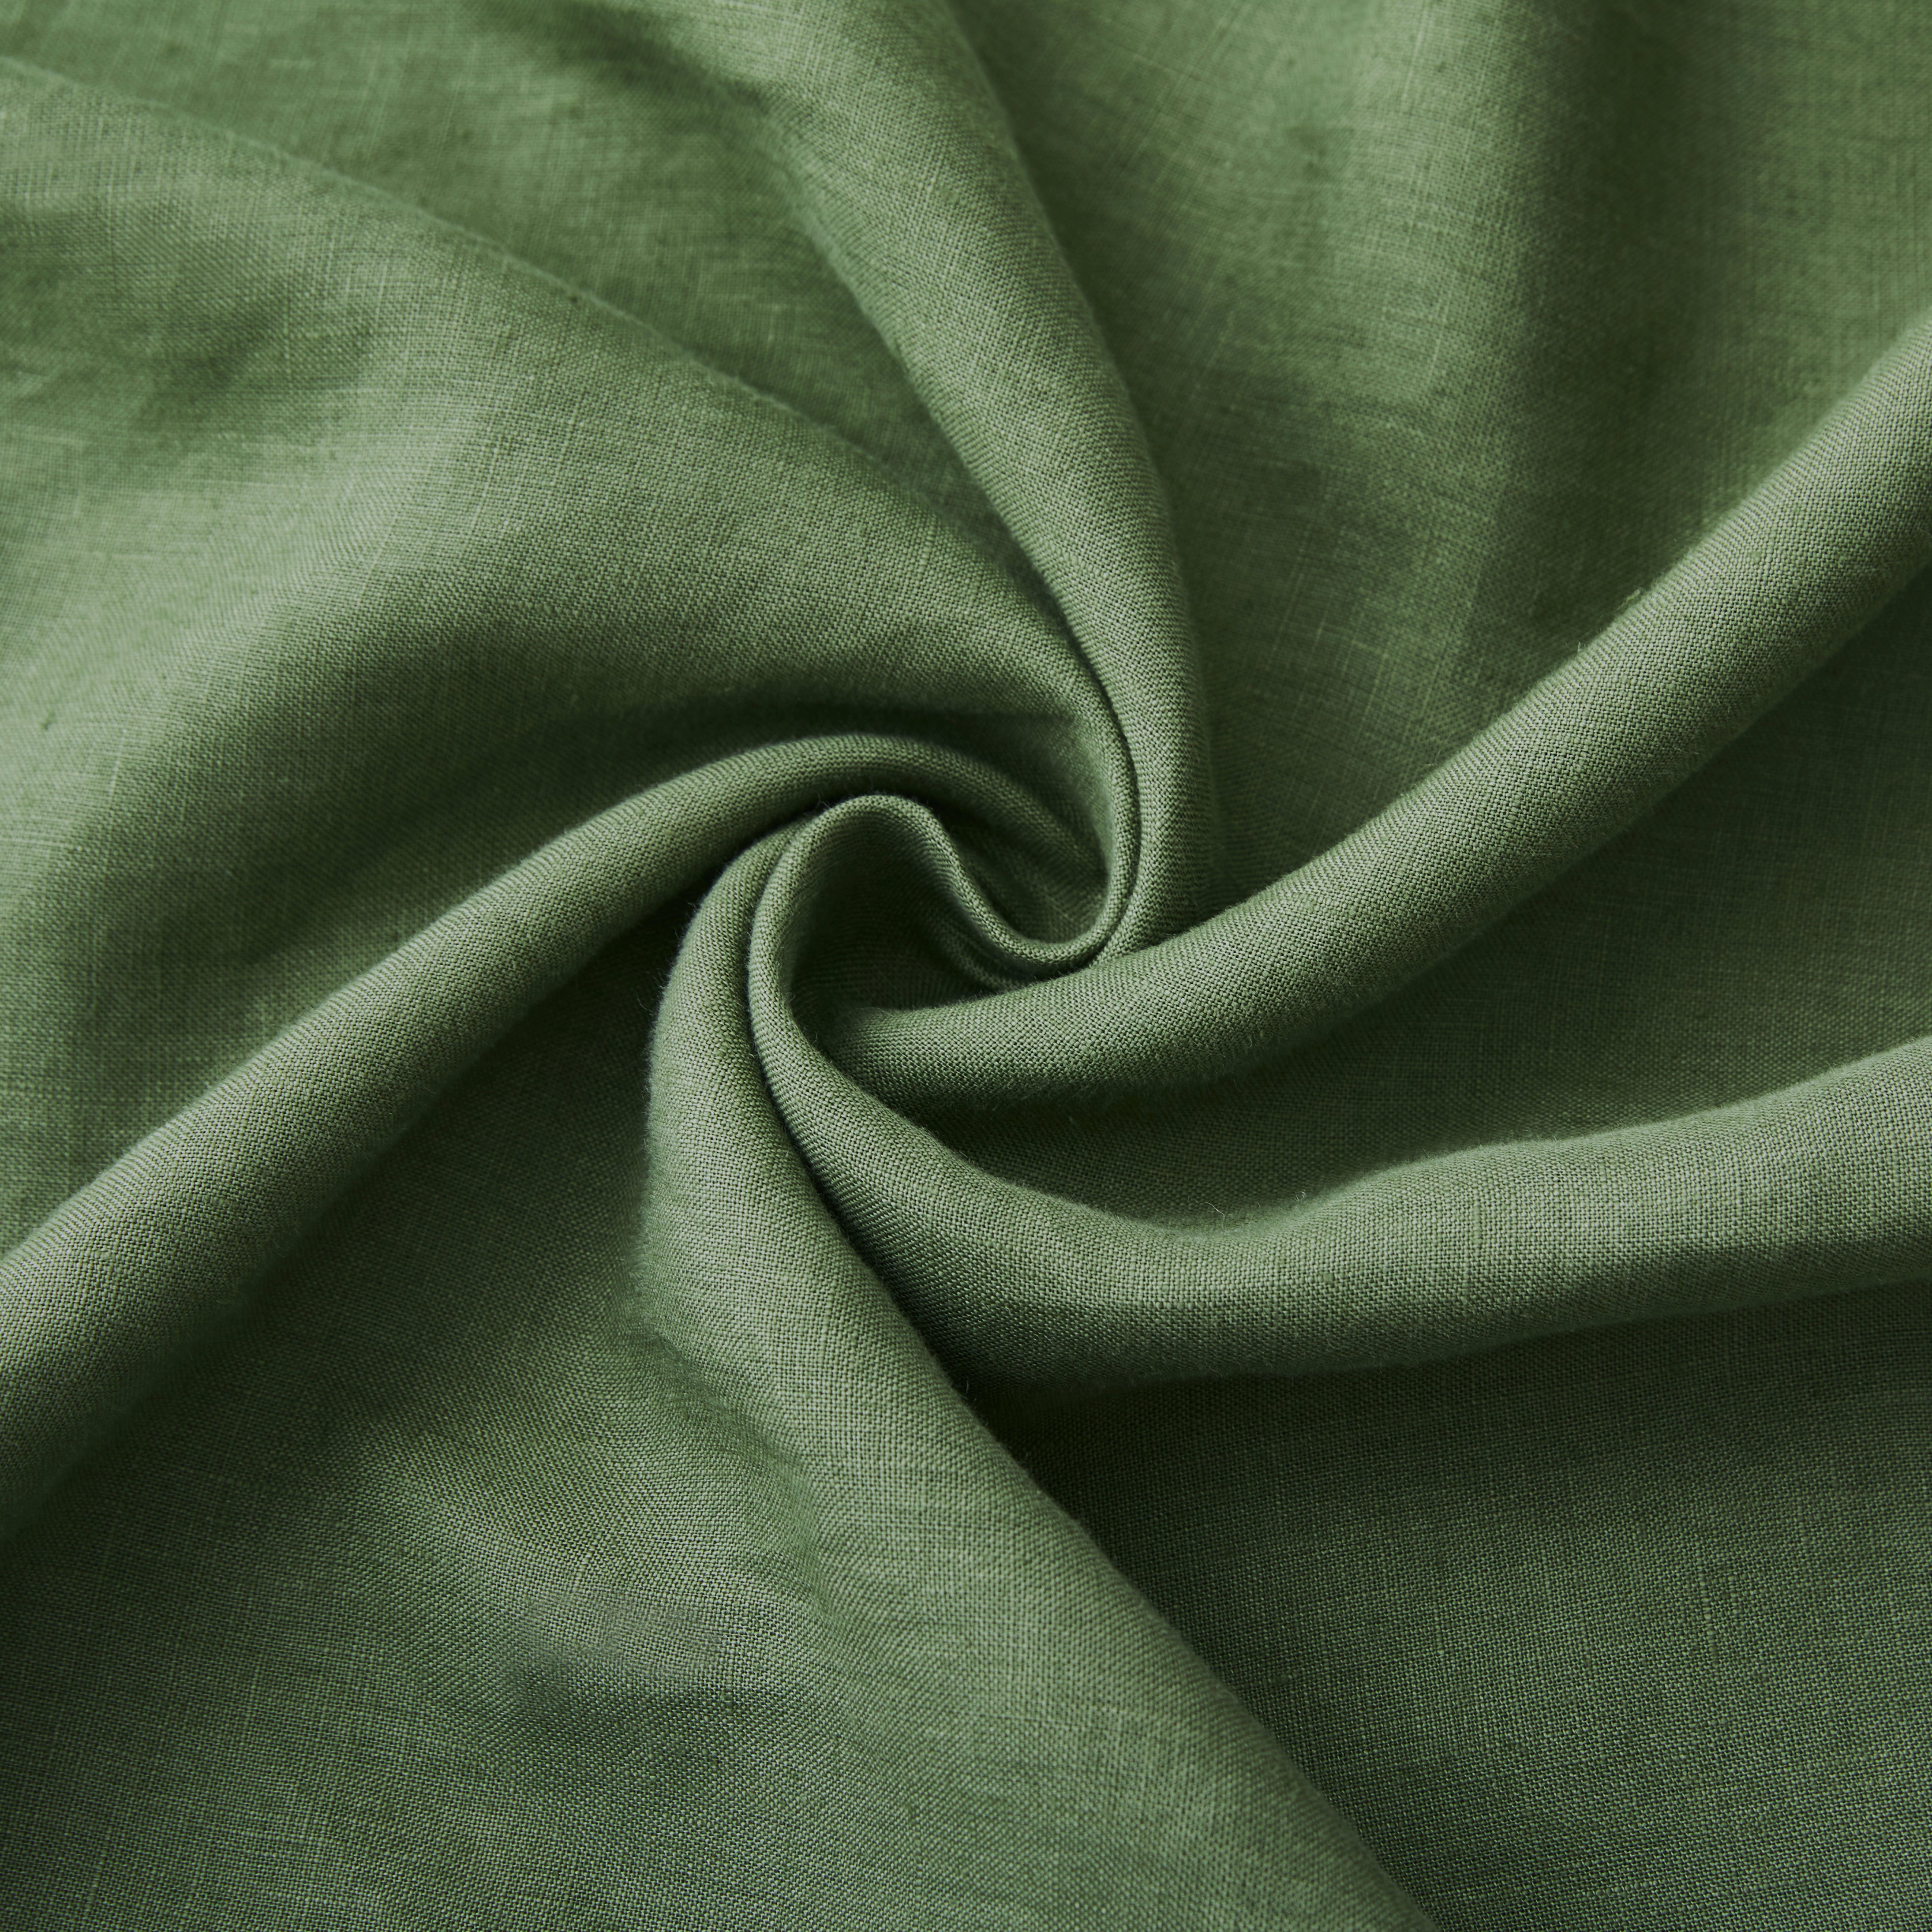 100% Linen Duvet Cover Green Queen 3 Piece